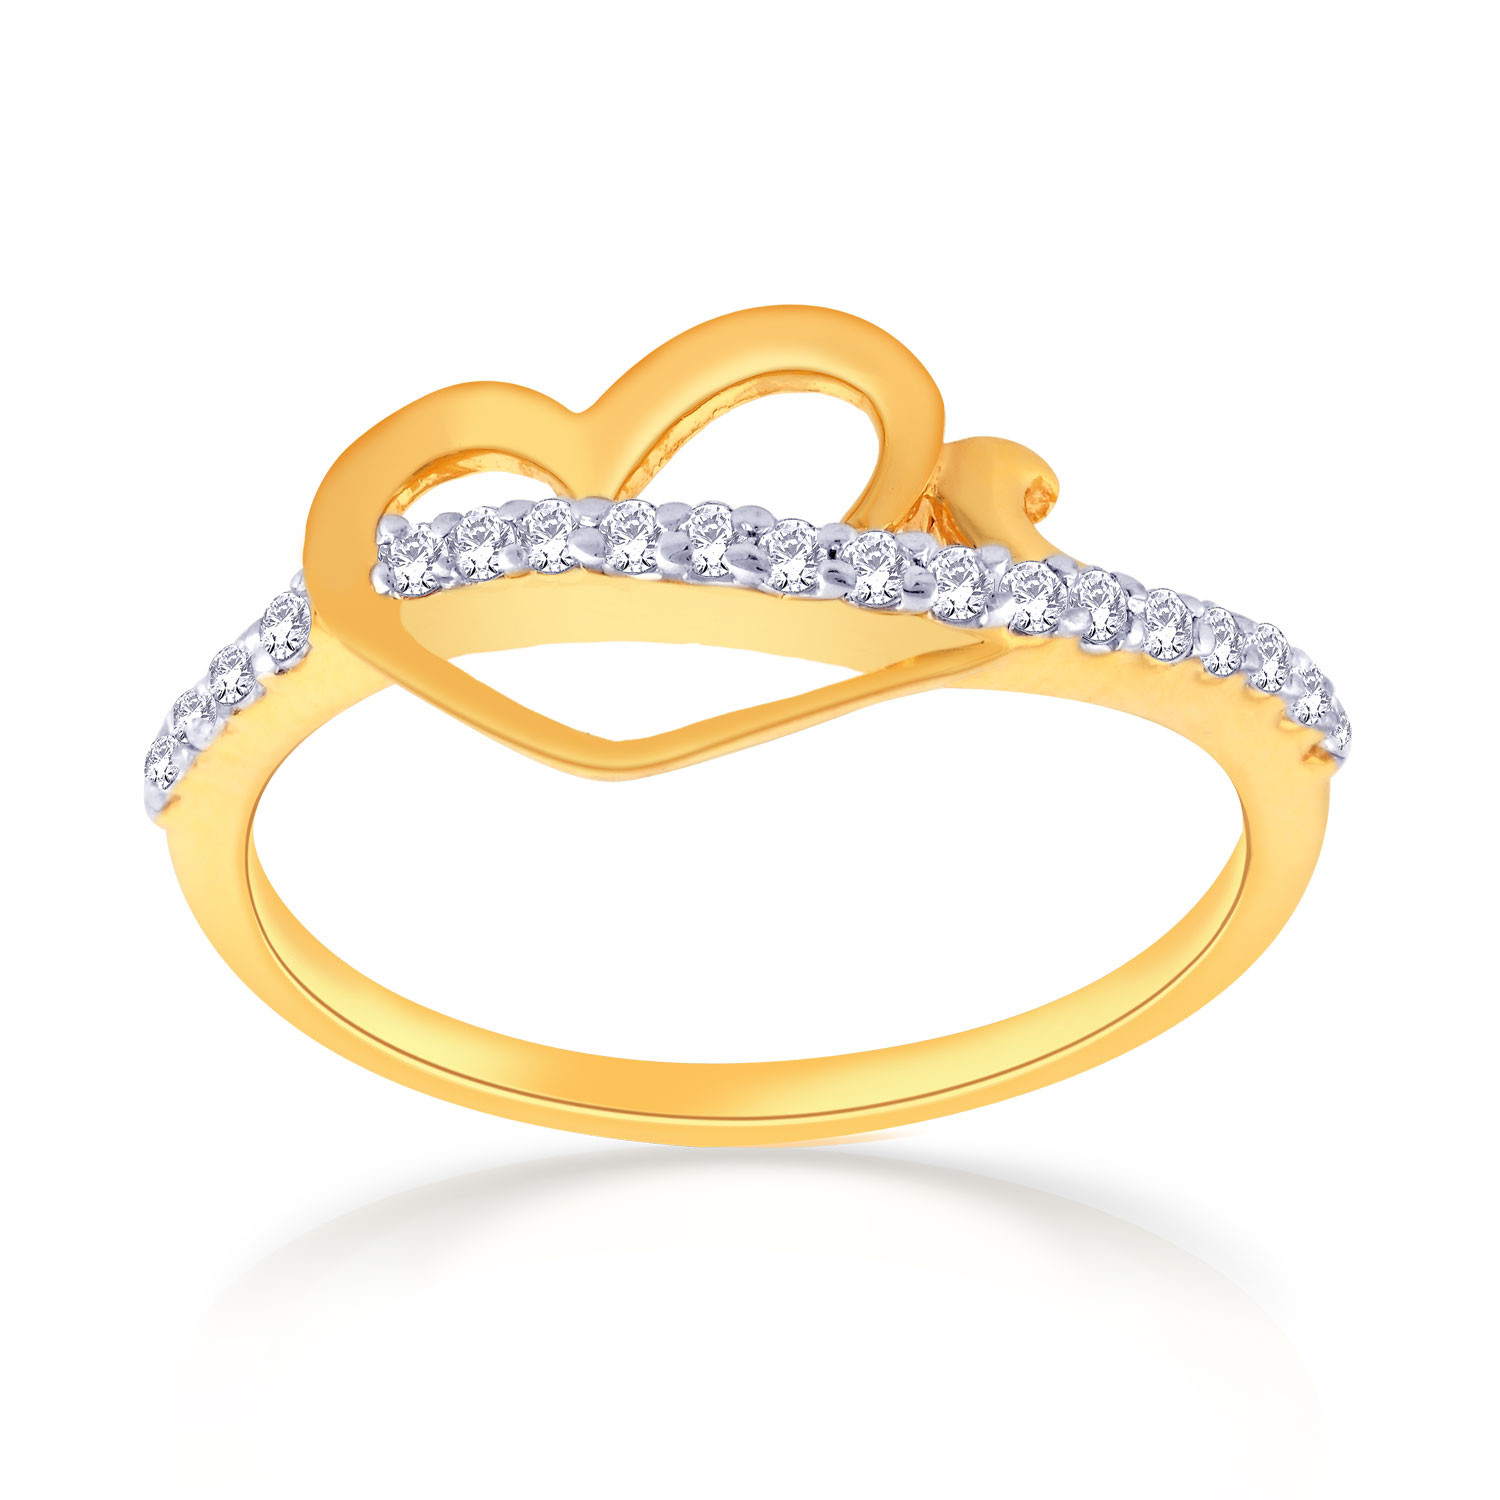 Buy Malabar Gold Ring MHAAAAAAAAFU for Women Online | Malabar Gold ...